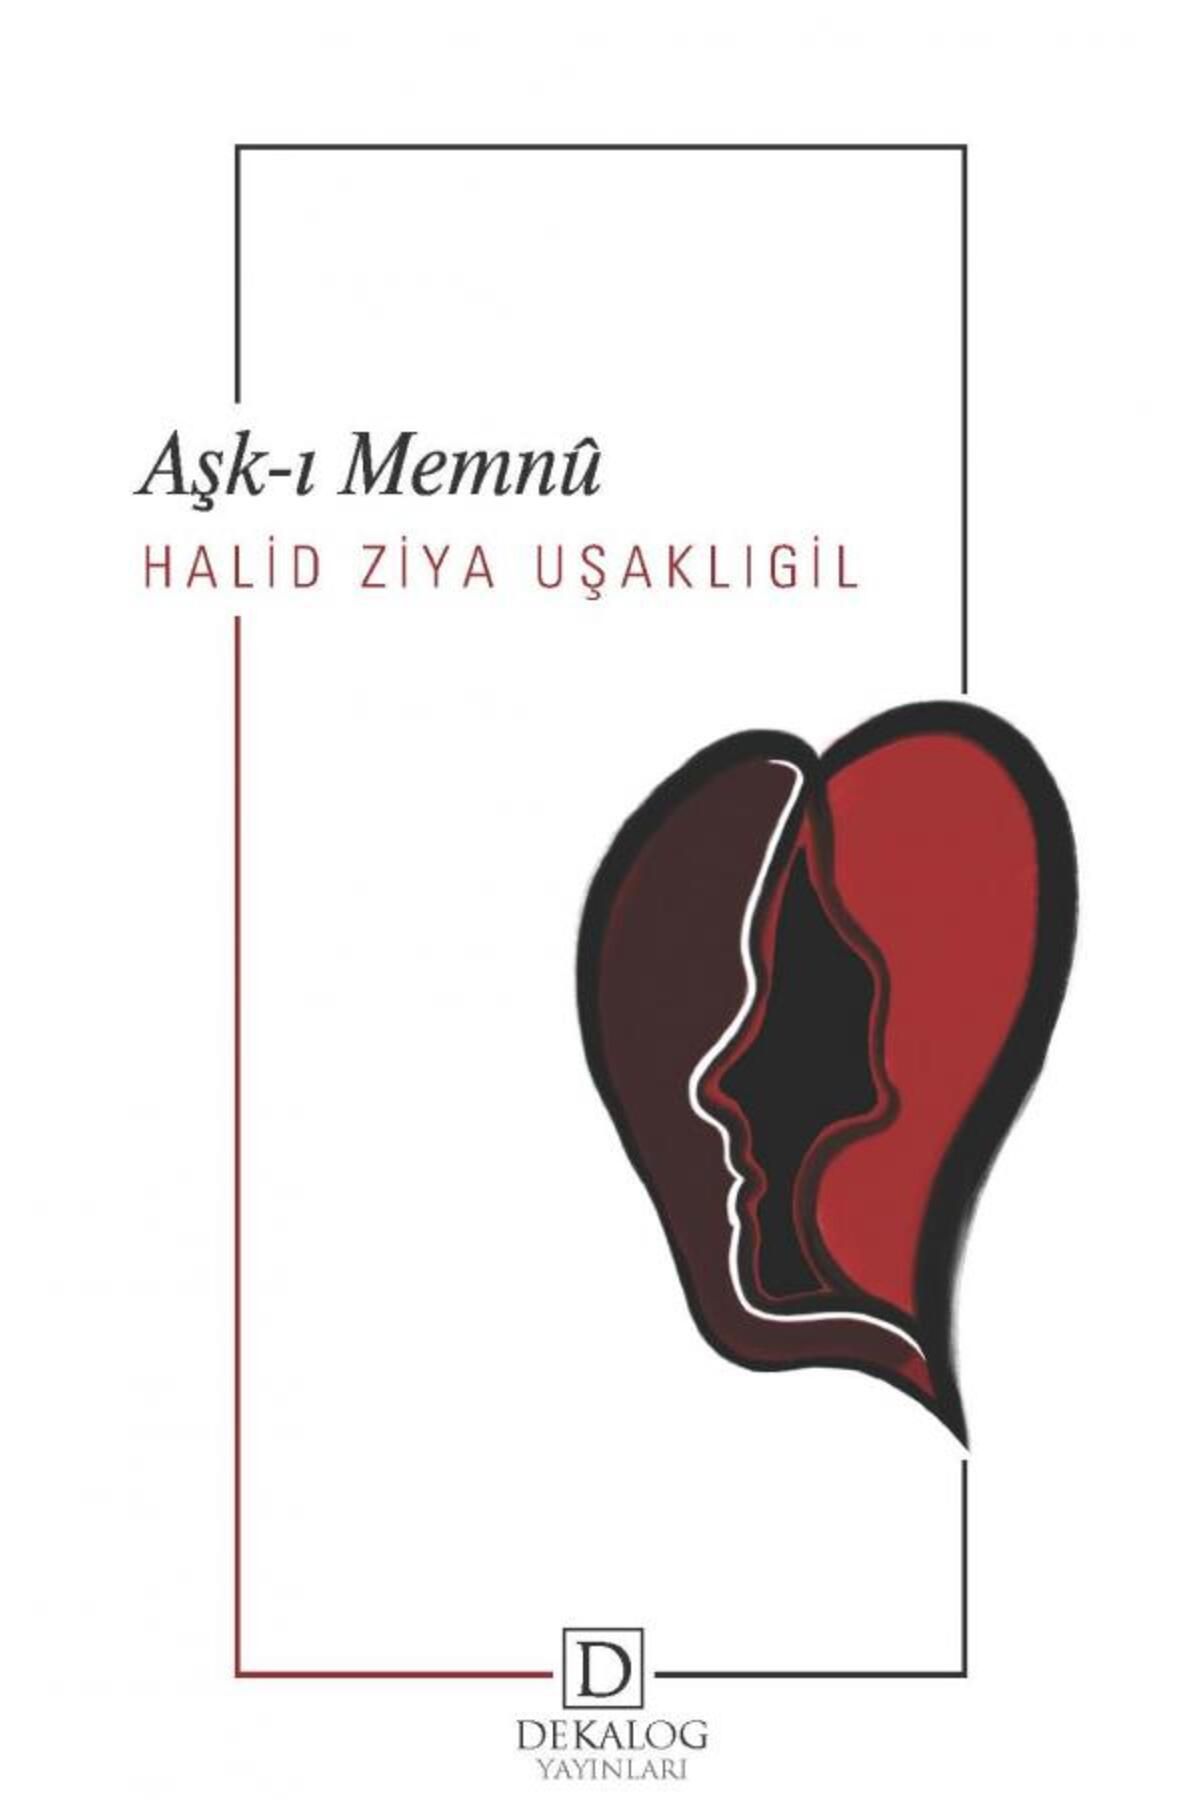 Dekalog Yayınları Aşkı/ı Memnu (CEP BOY) kitabı / Halid Ziya Uşaklıgil / Dekalog Yayınları